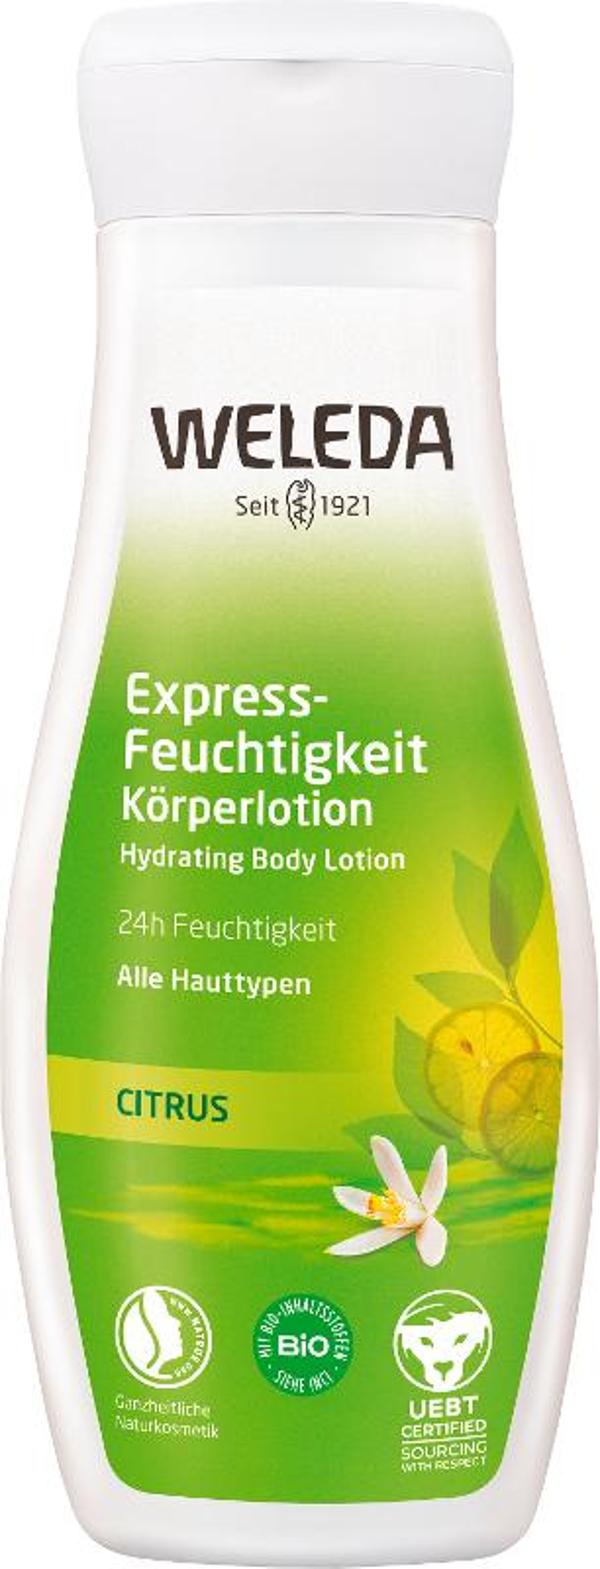 Produktfoto zu Citrus Express-Feuchtigkeit Körperlotion, 200ml